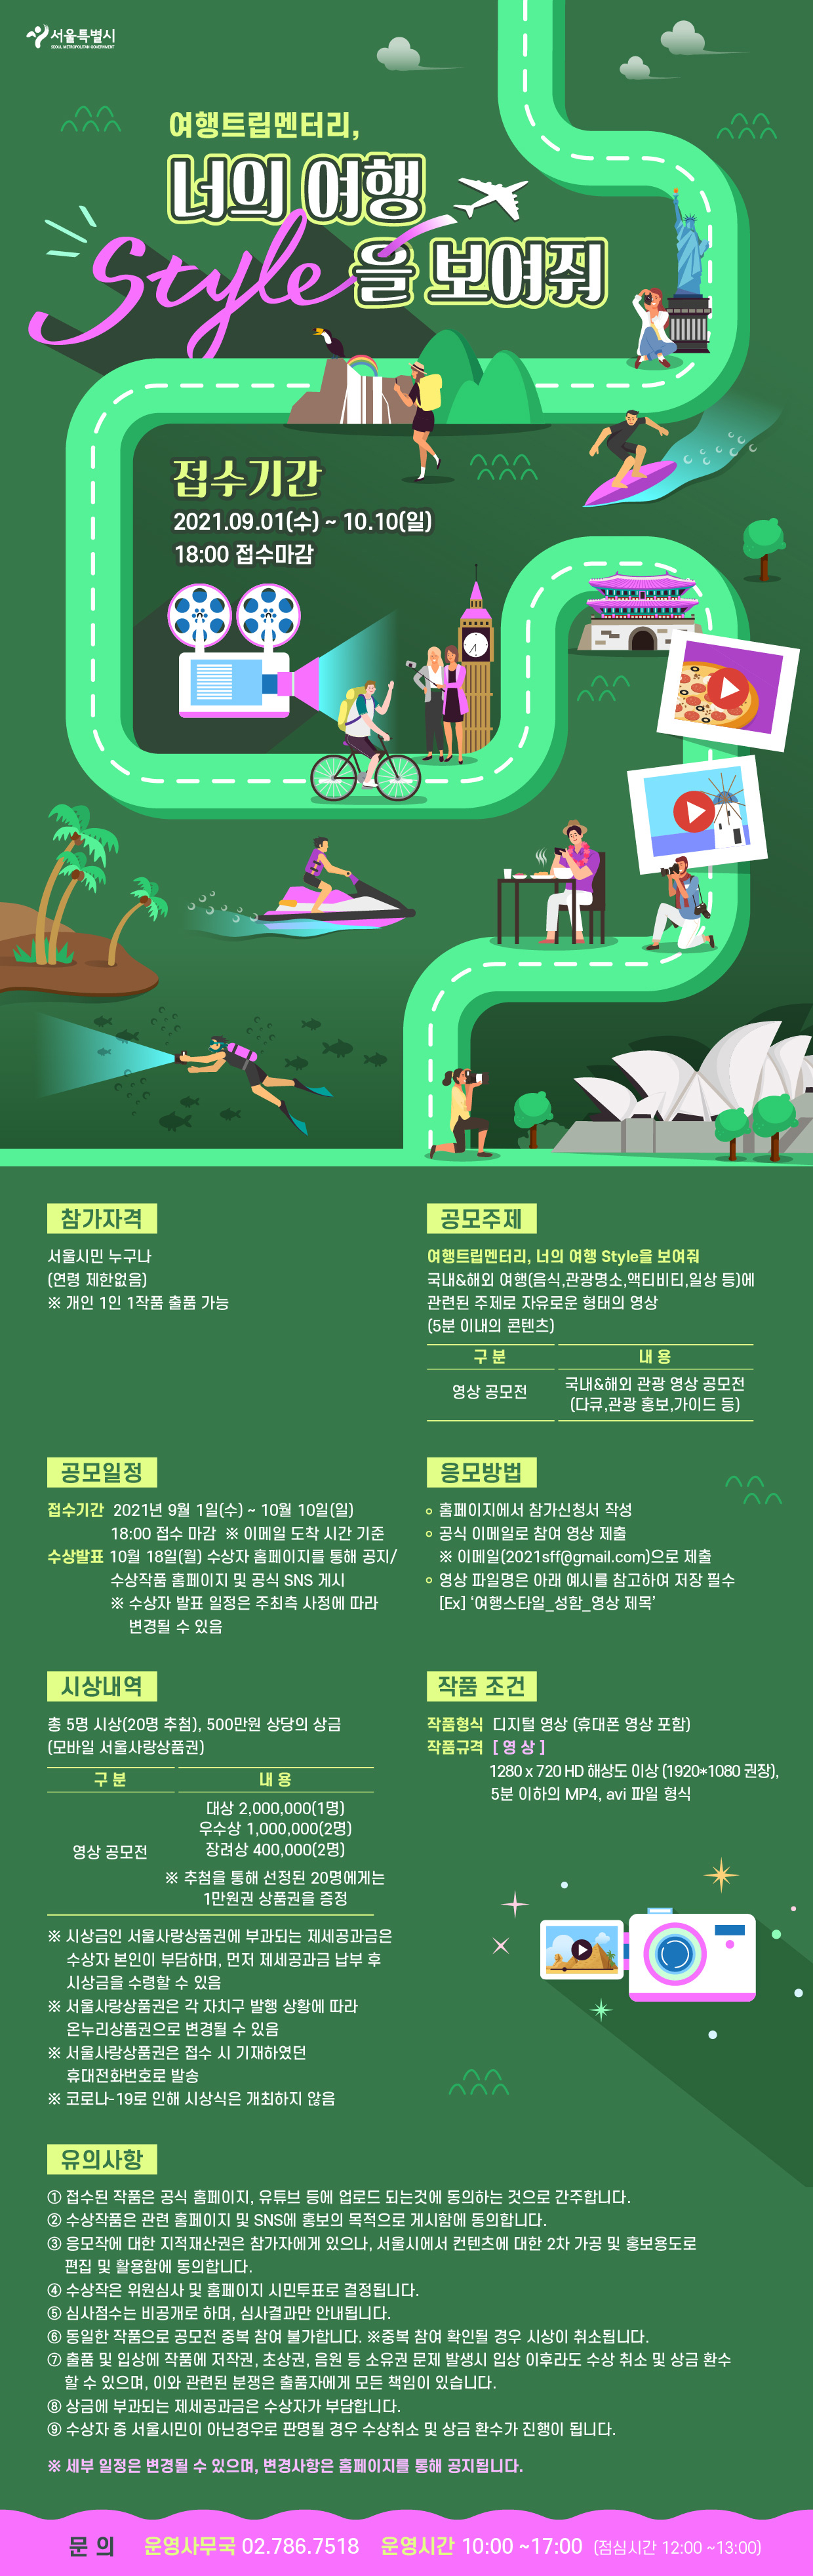 2021 서울세계도시문화축제 여행트립멘터리 공모전